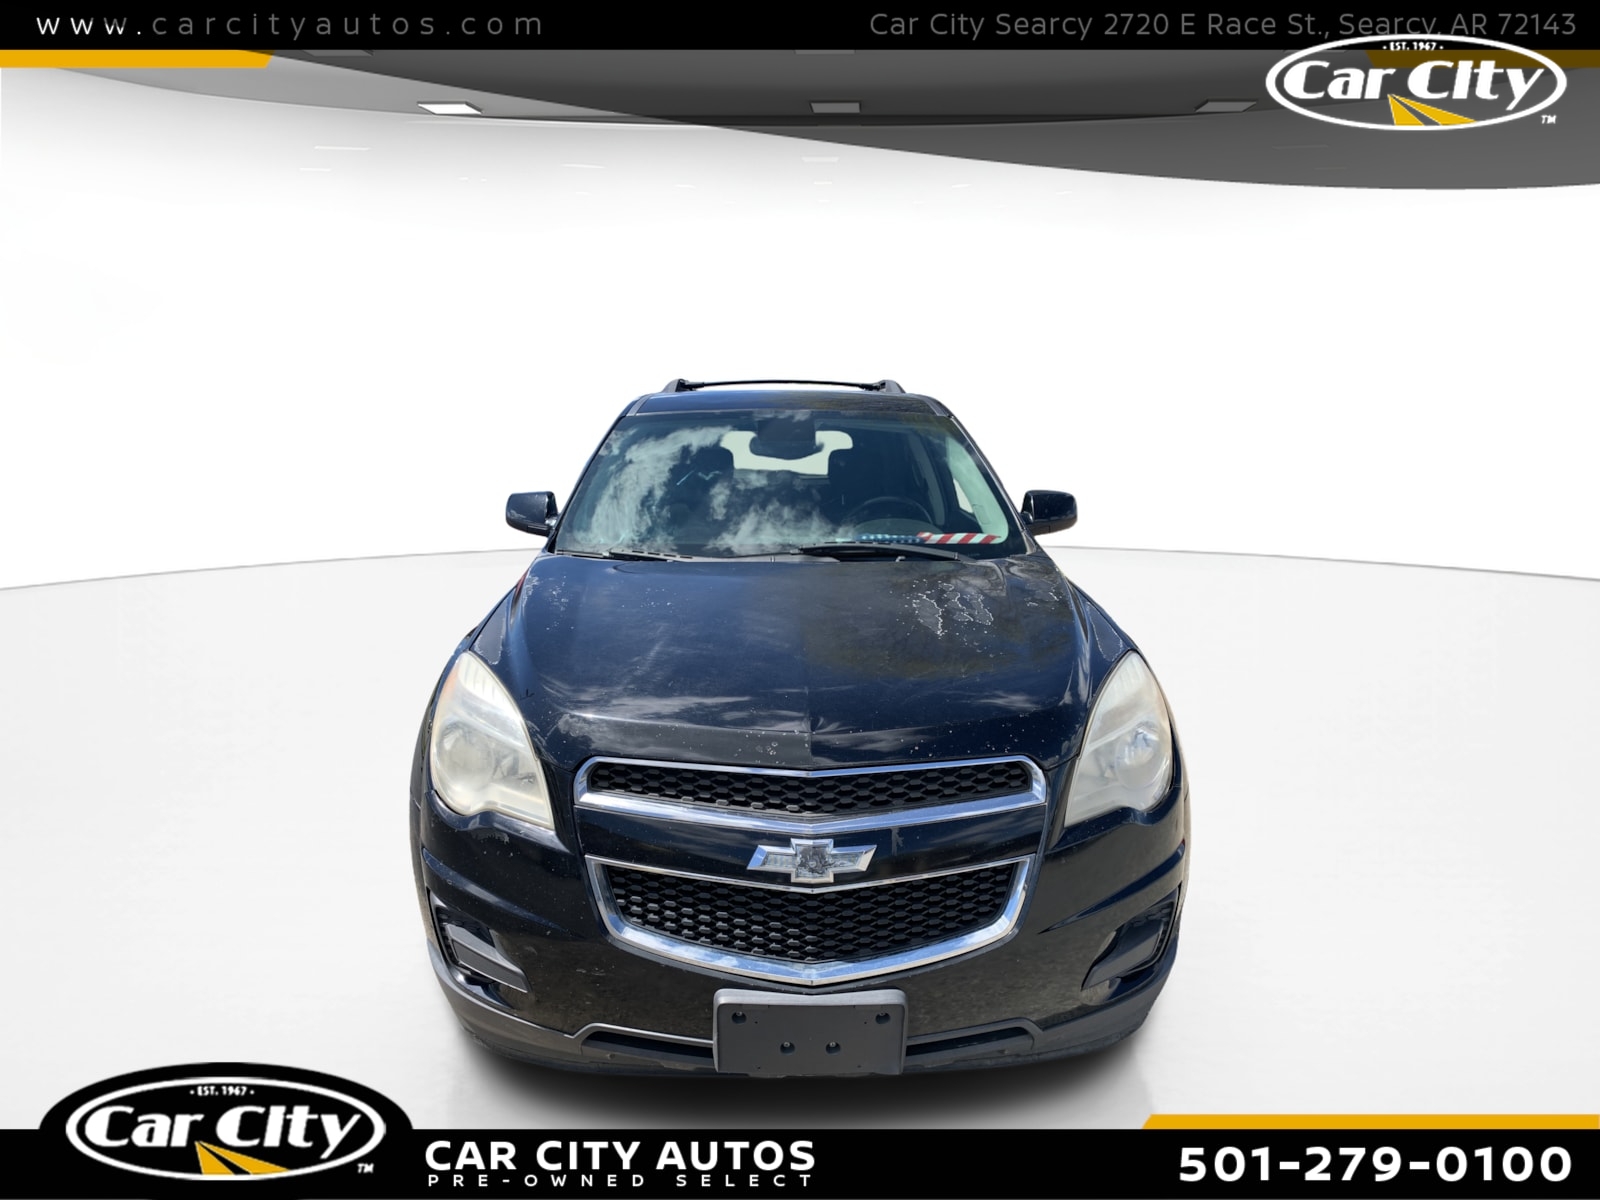 2013 Chevrolet Equinox LT  - D127606T  - Car City Autos